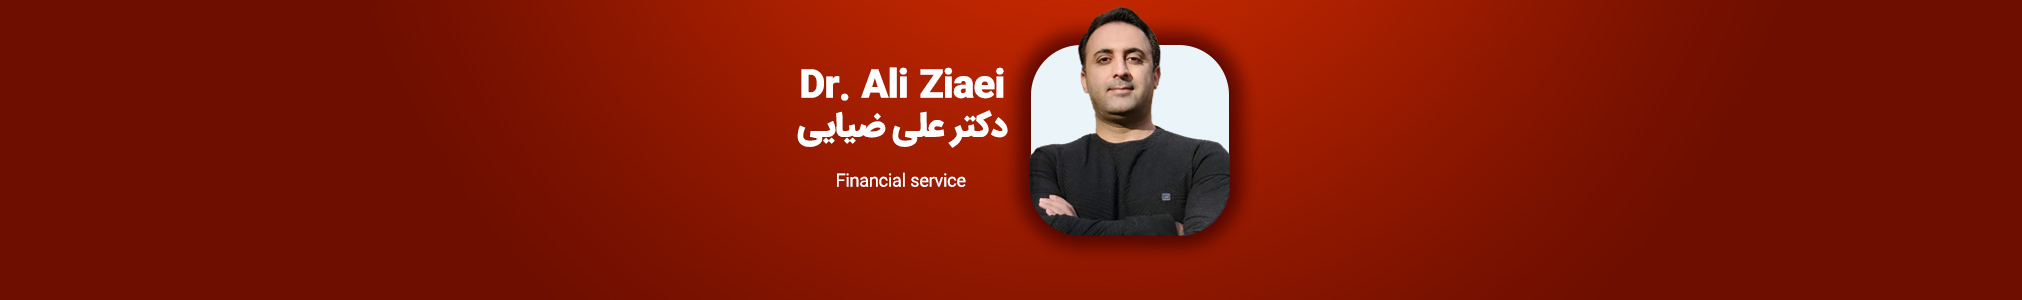 Dr. Ali Ziaei